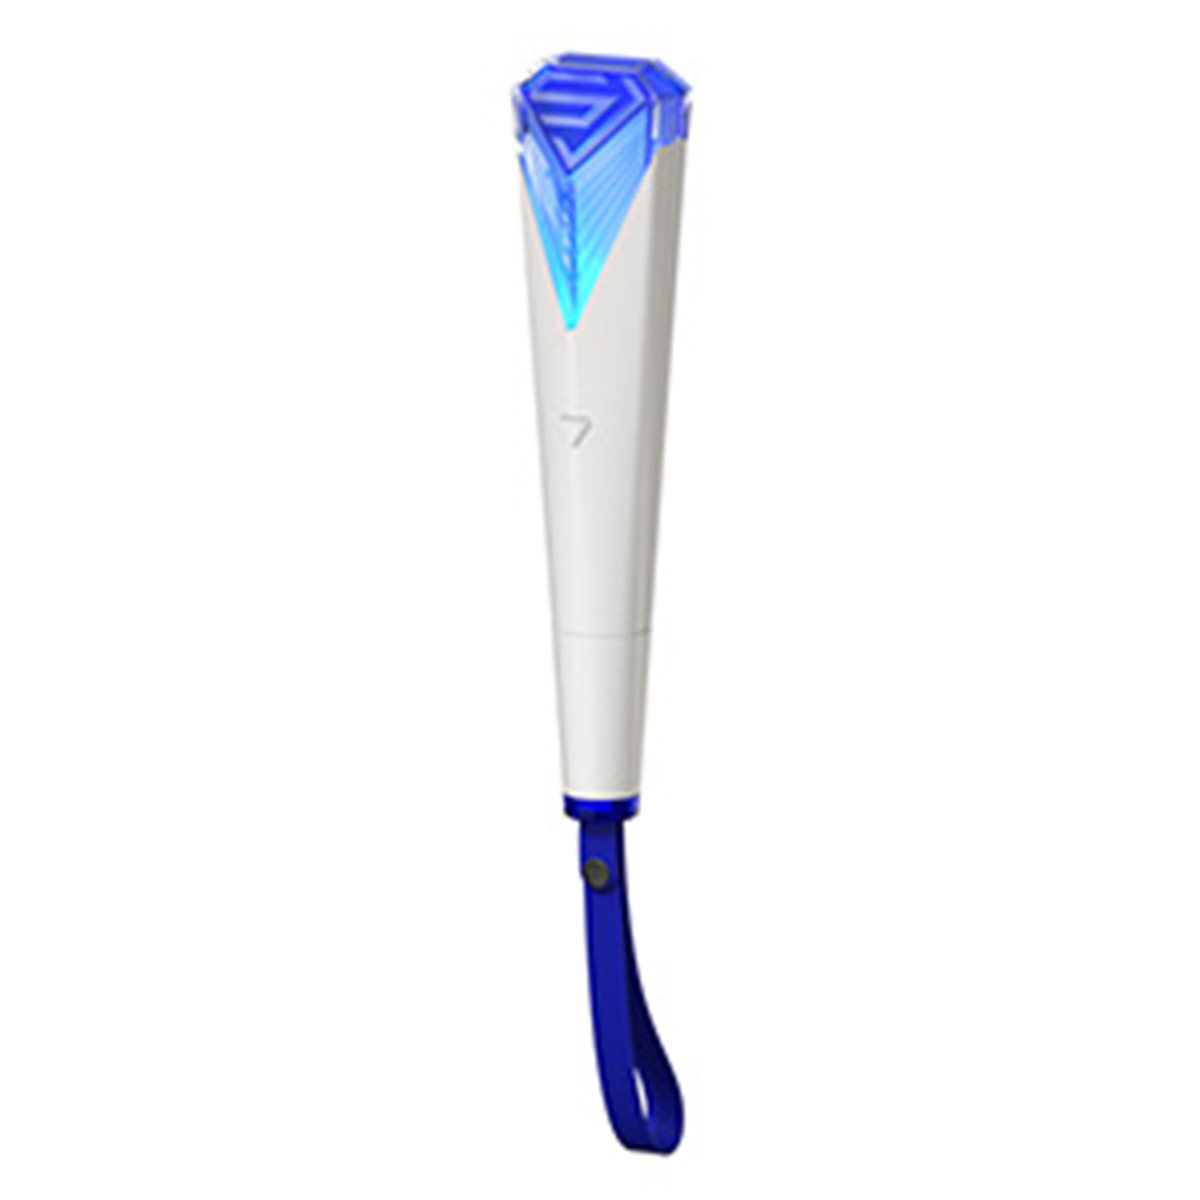 Merchandising Super Junior - Official Super Junior Light Stick NUOVO SIGILLATO, EDIZIONE DEL 01/10/2018 SUBITO DISPONIBILE